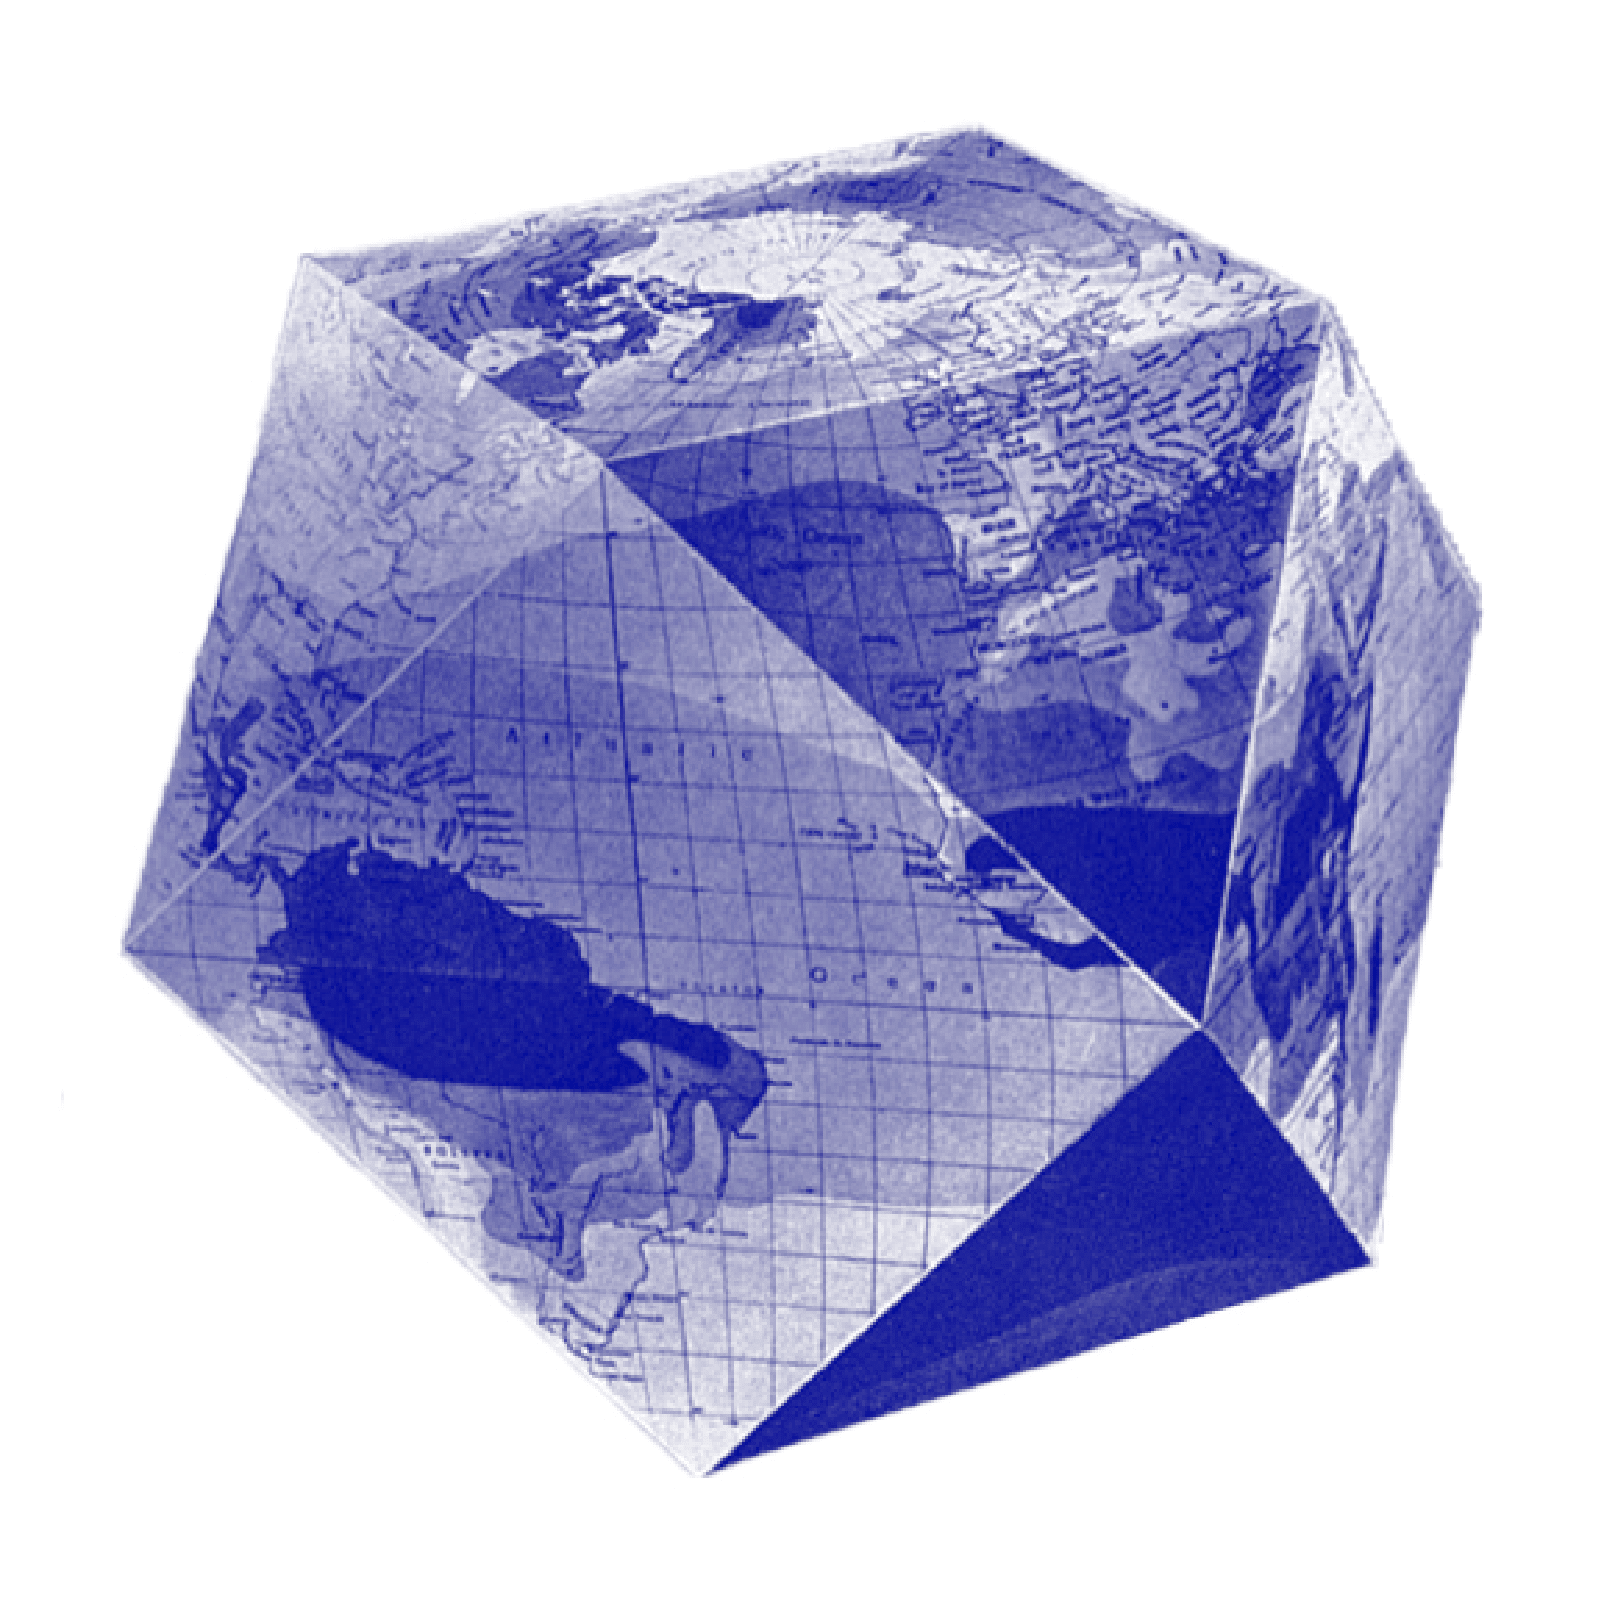 © Fuller dymaxion globe; D.R estate R. Buckminster Fuller